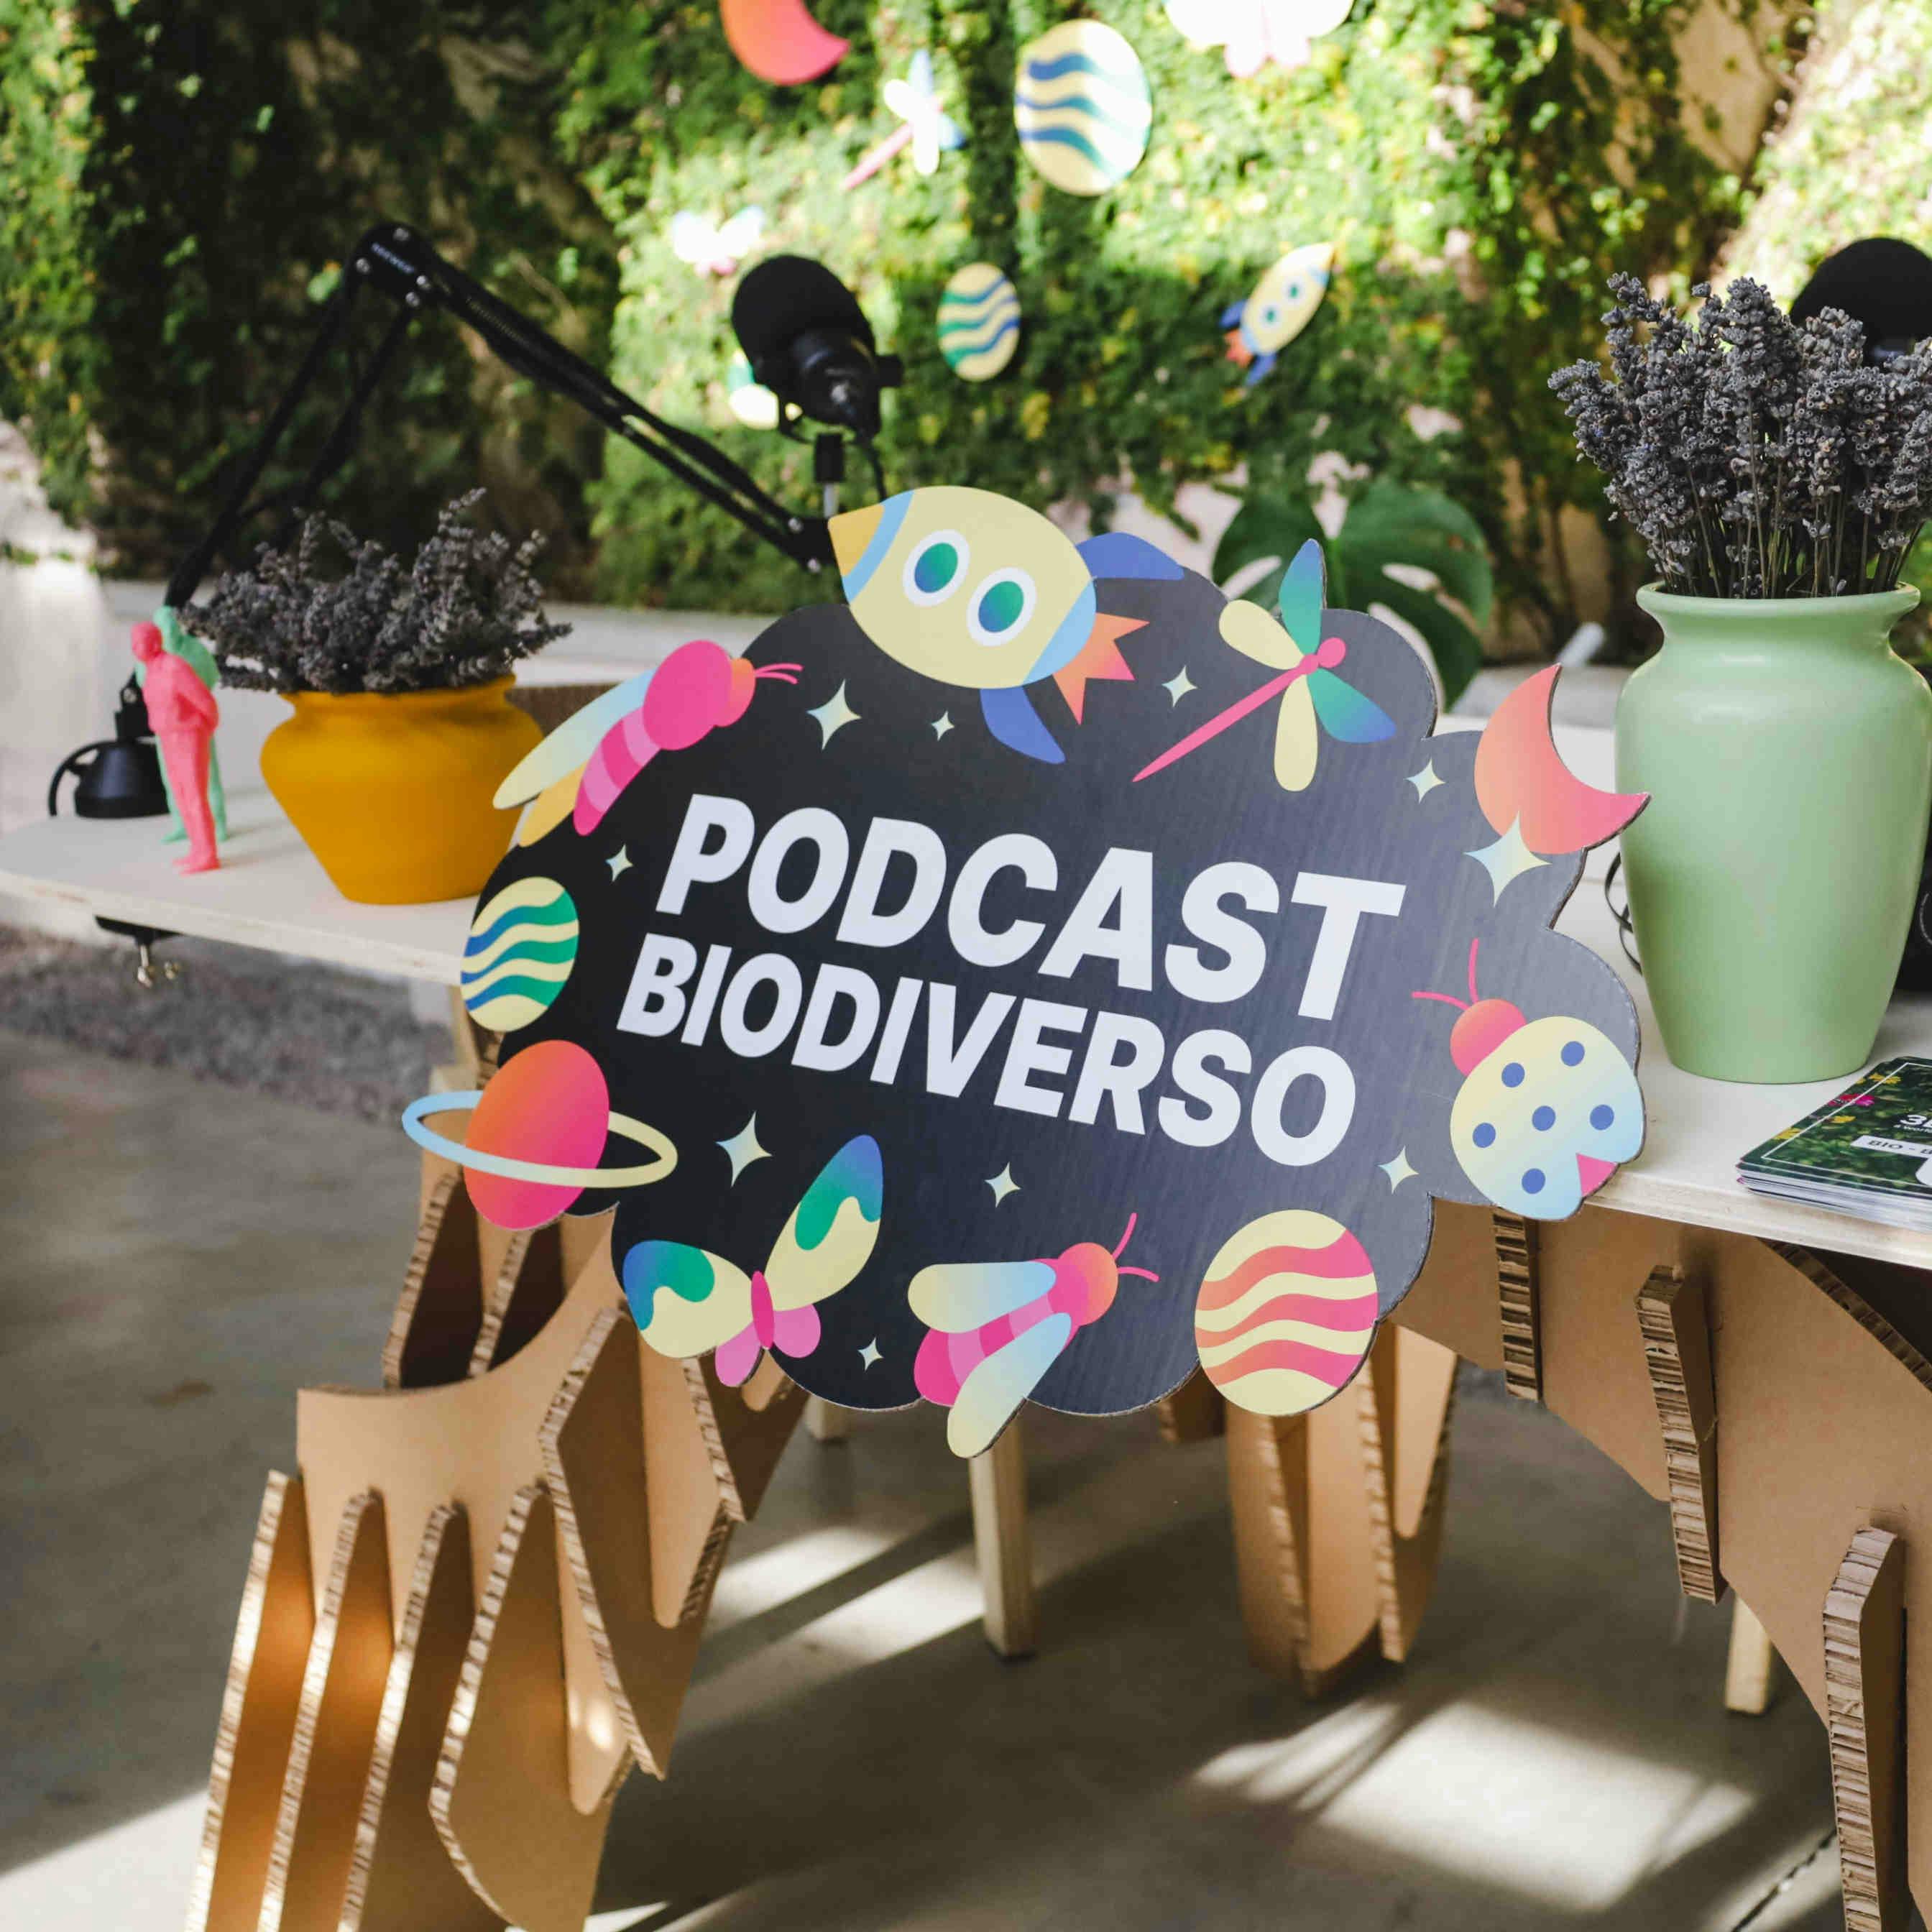 Biodiverse-Podcast: Episoden und Gäste